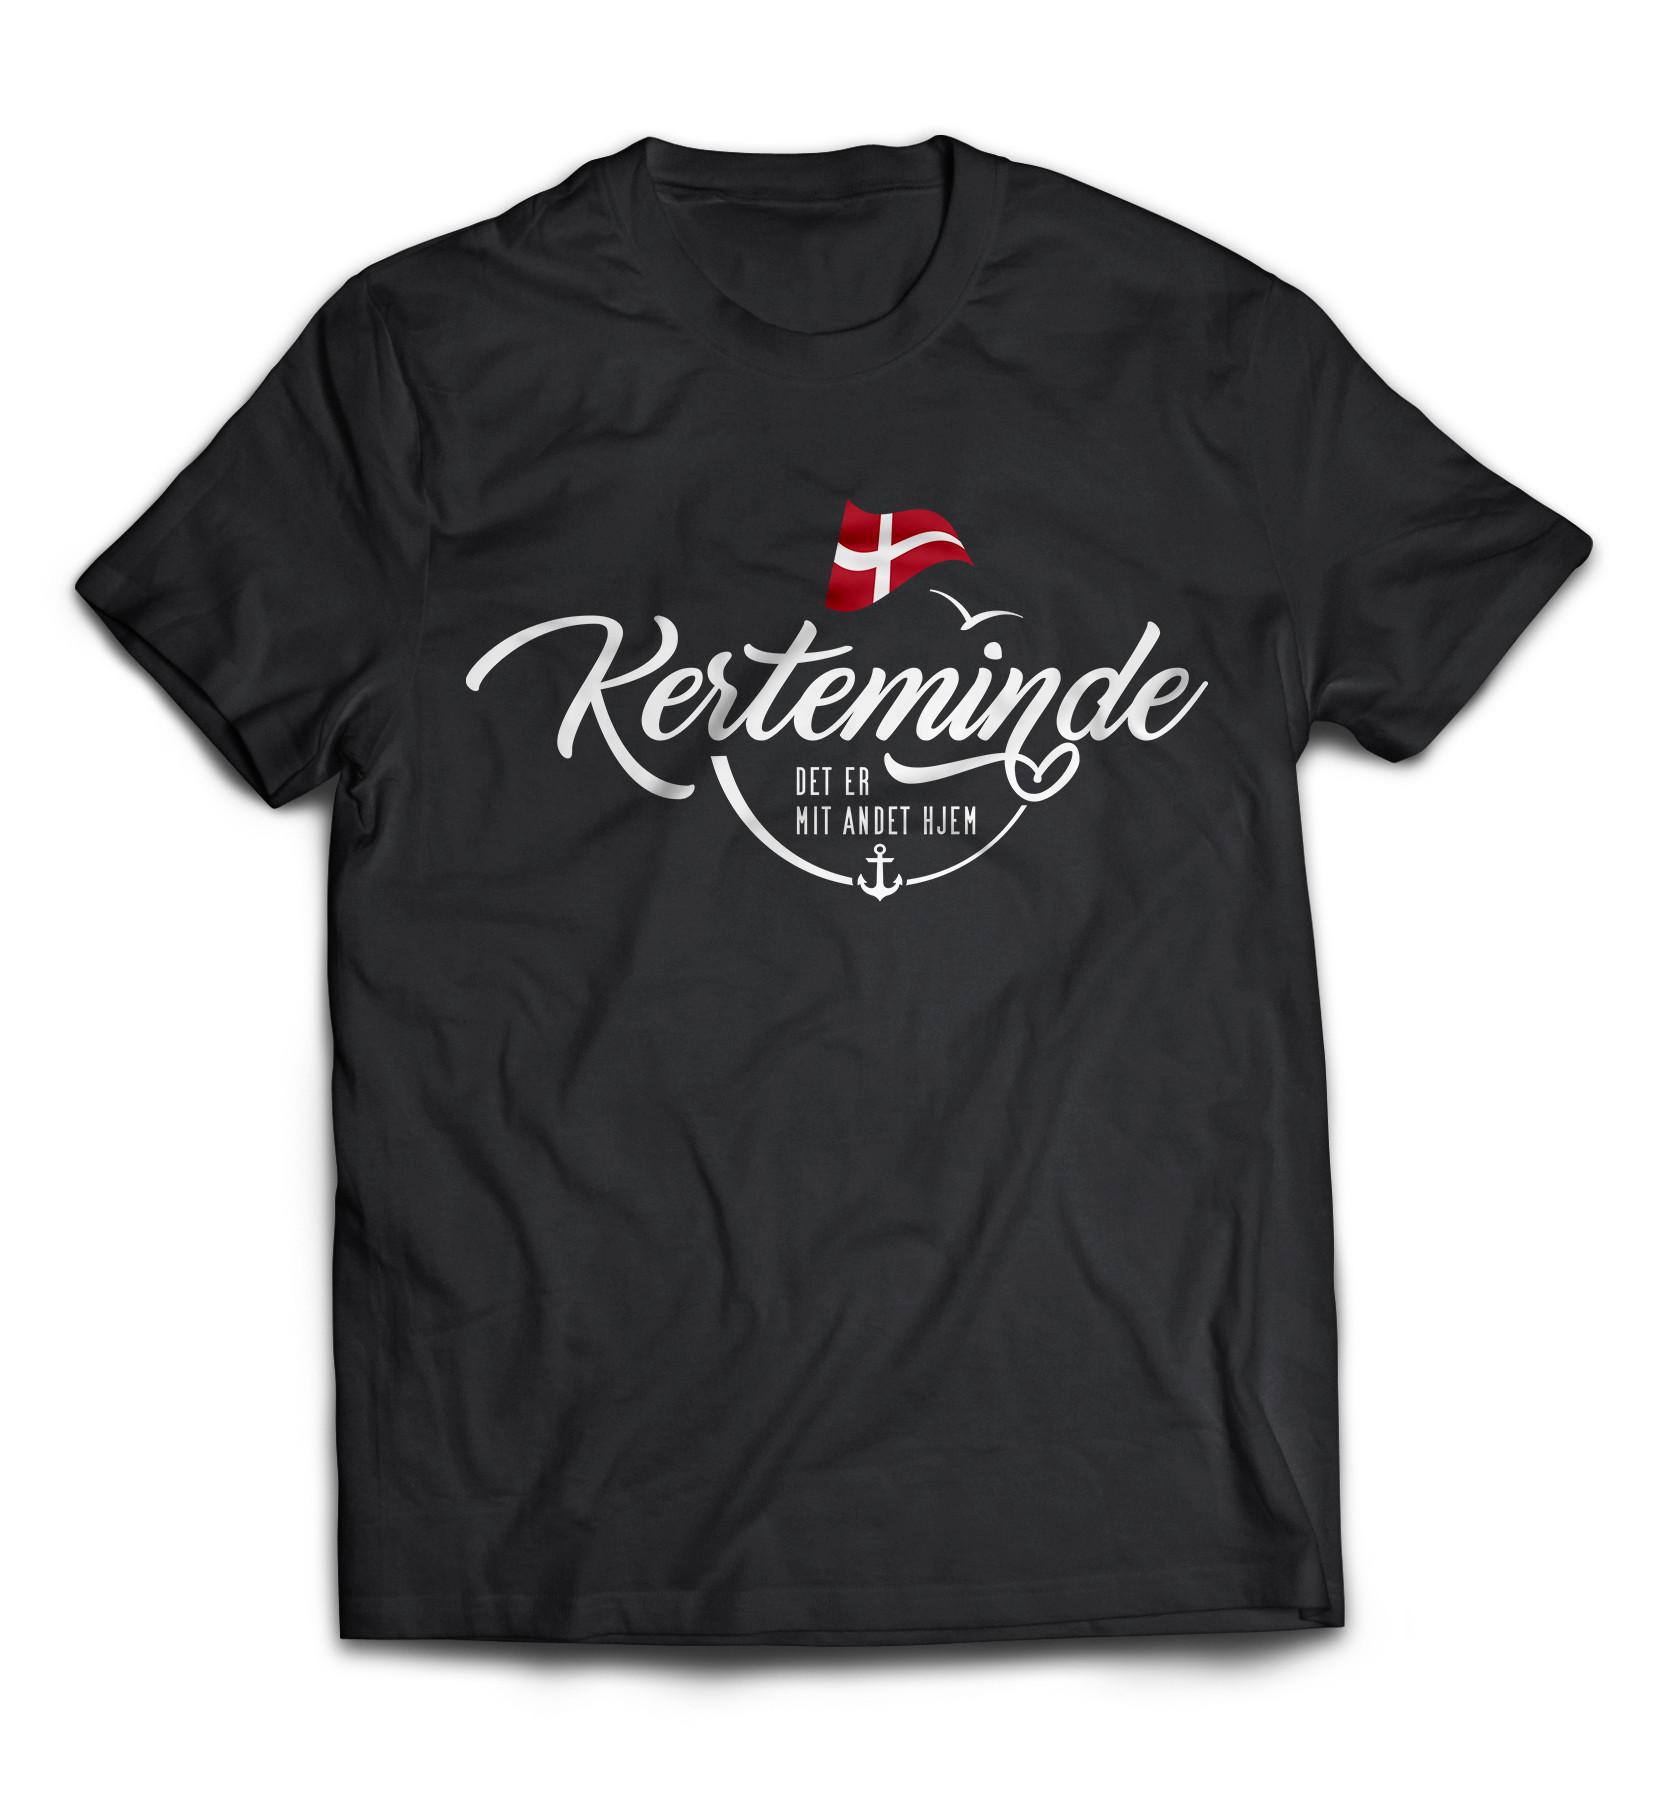 Dänemark - Meine zweite Heimat - T-Shirt "Kerteminde"